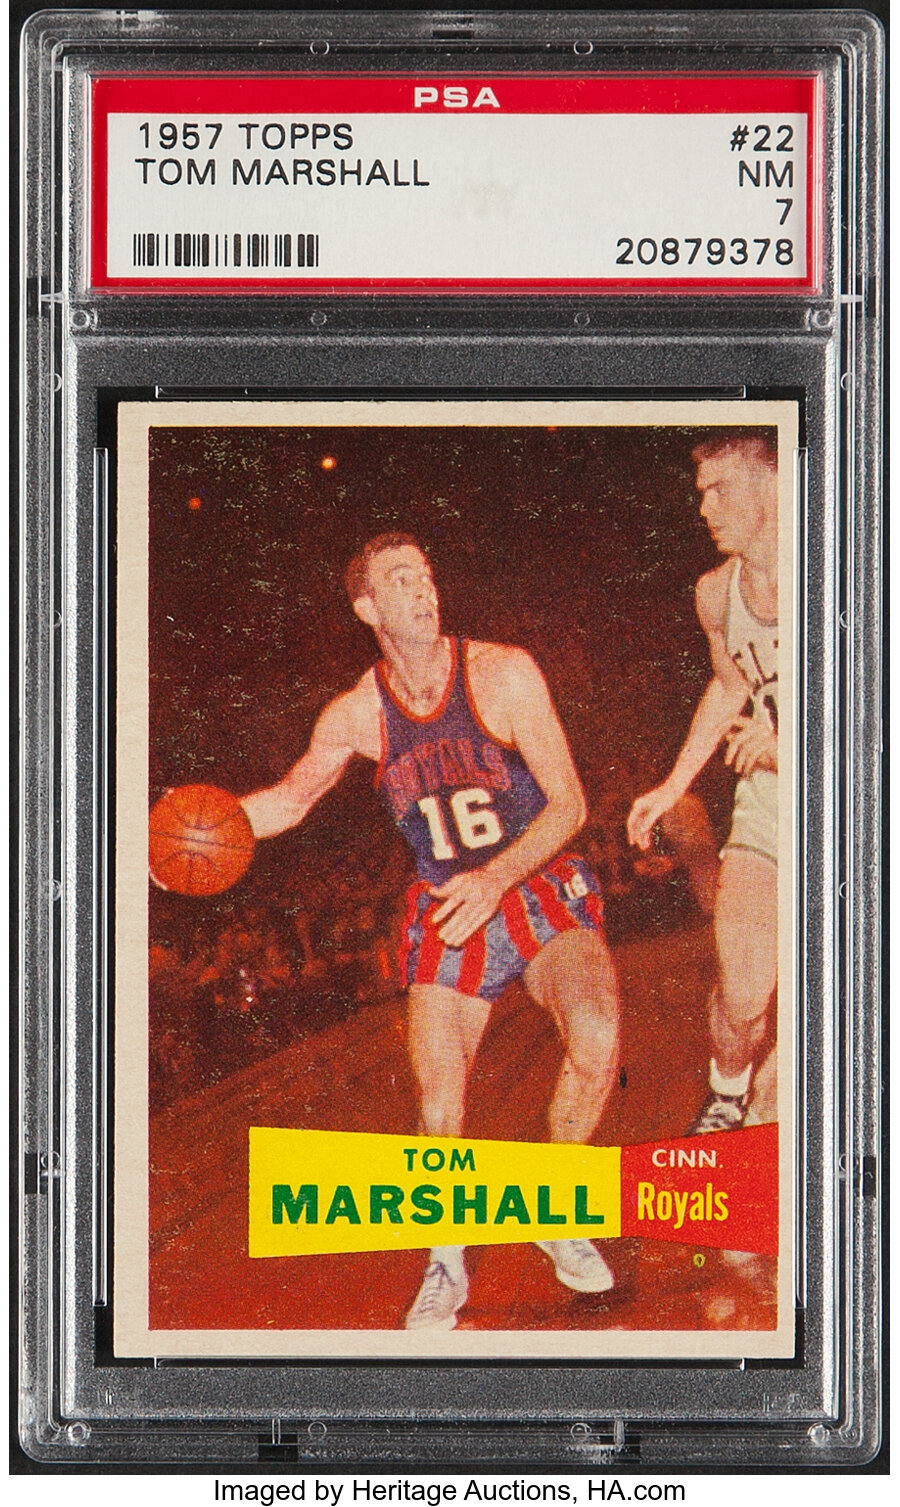 1957 Topps Tom Marshall #22 PSA NM 7